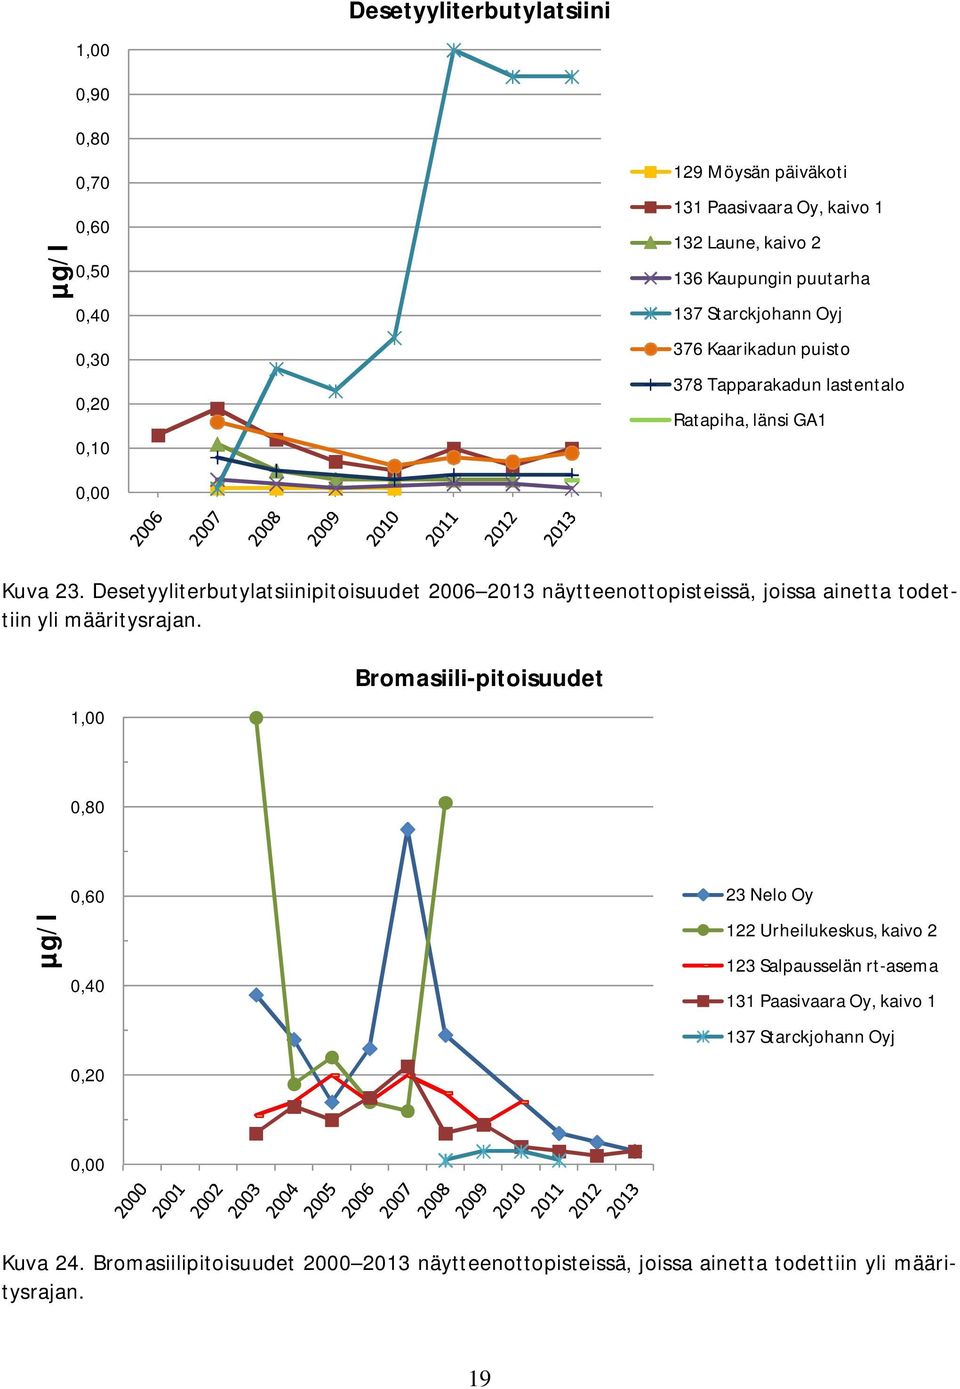 Desetyyliterbutylatsiinipitoisuudet 2006 2013 näytteenottopisteissä, joissa ainetta todettiin yli määritysrajan.